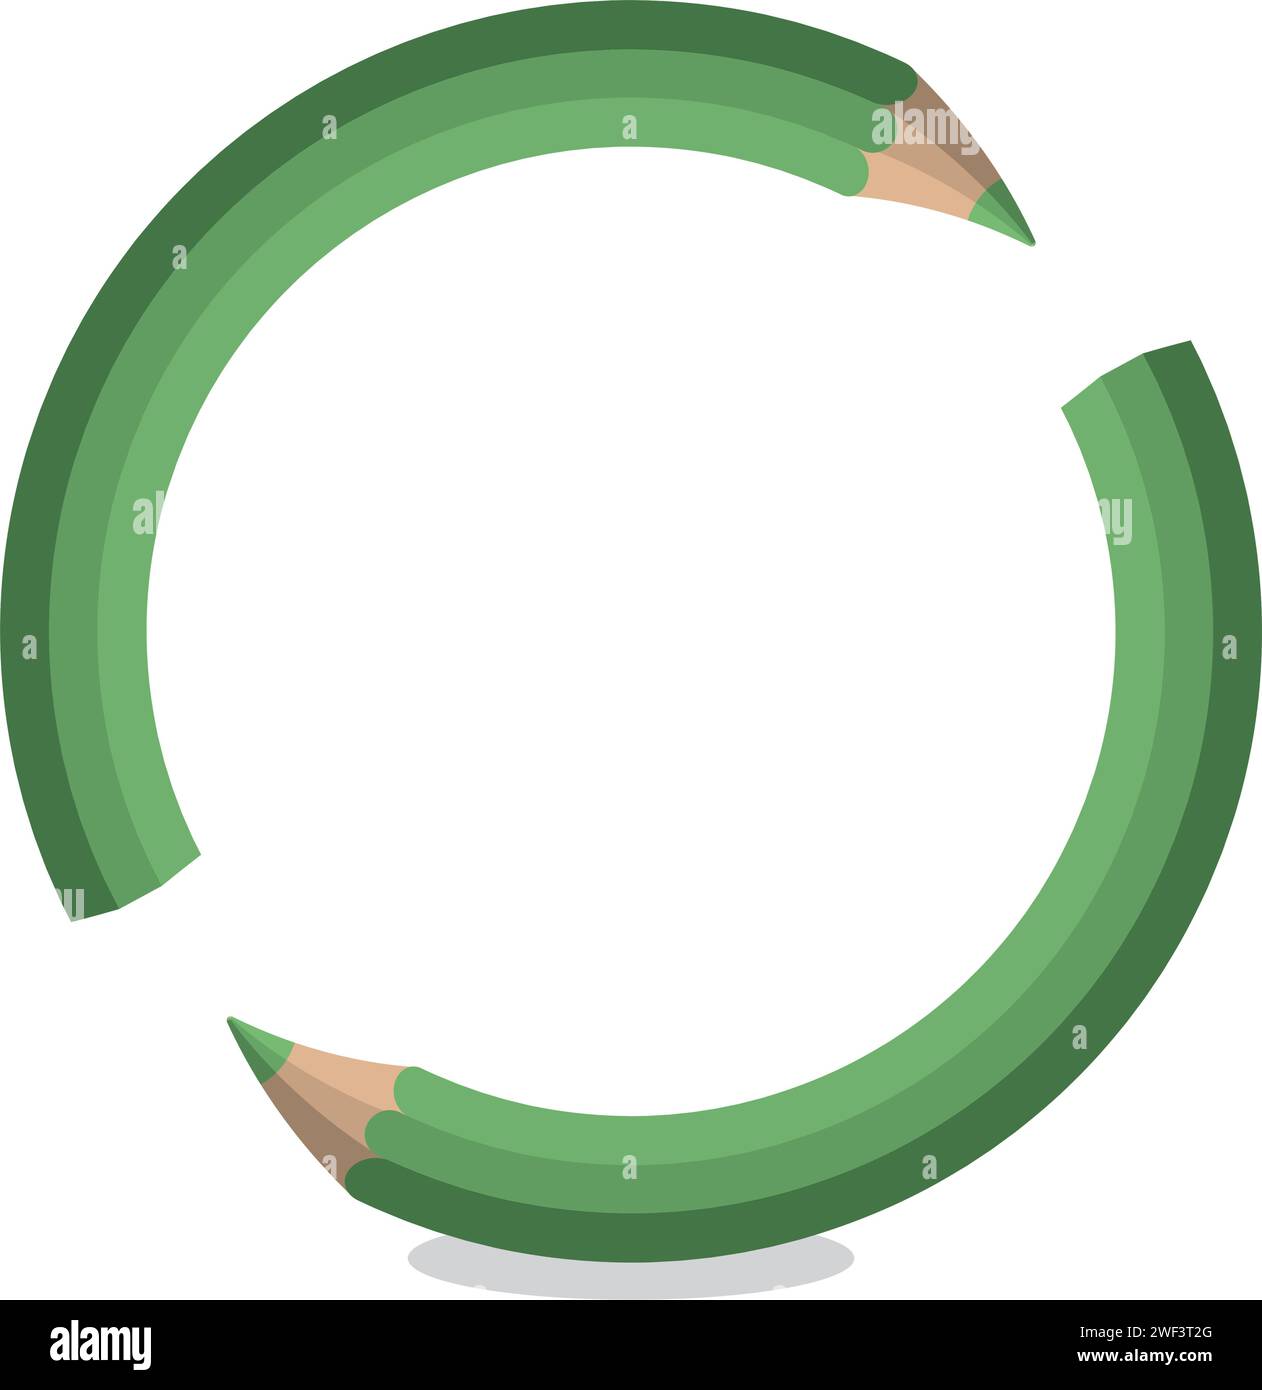 Ein pädagogisches Konzept Illustration von zwei grünen Bleistiften, die einen Ring bilden, symbolisiert den kontinuierlichen Zyklus des Lernens und die Bedeutung der Einheit und Stock Vektor